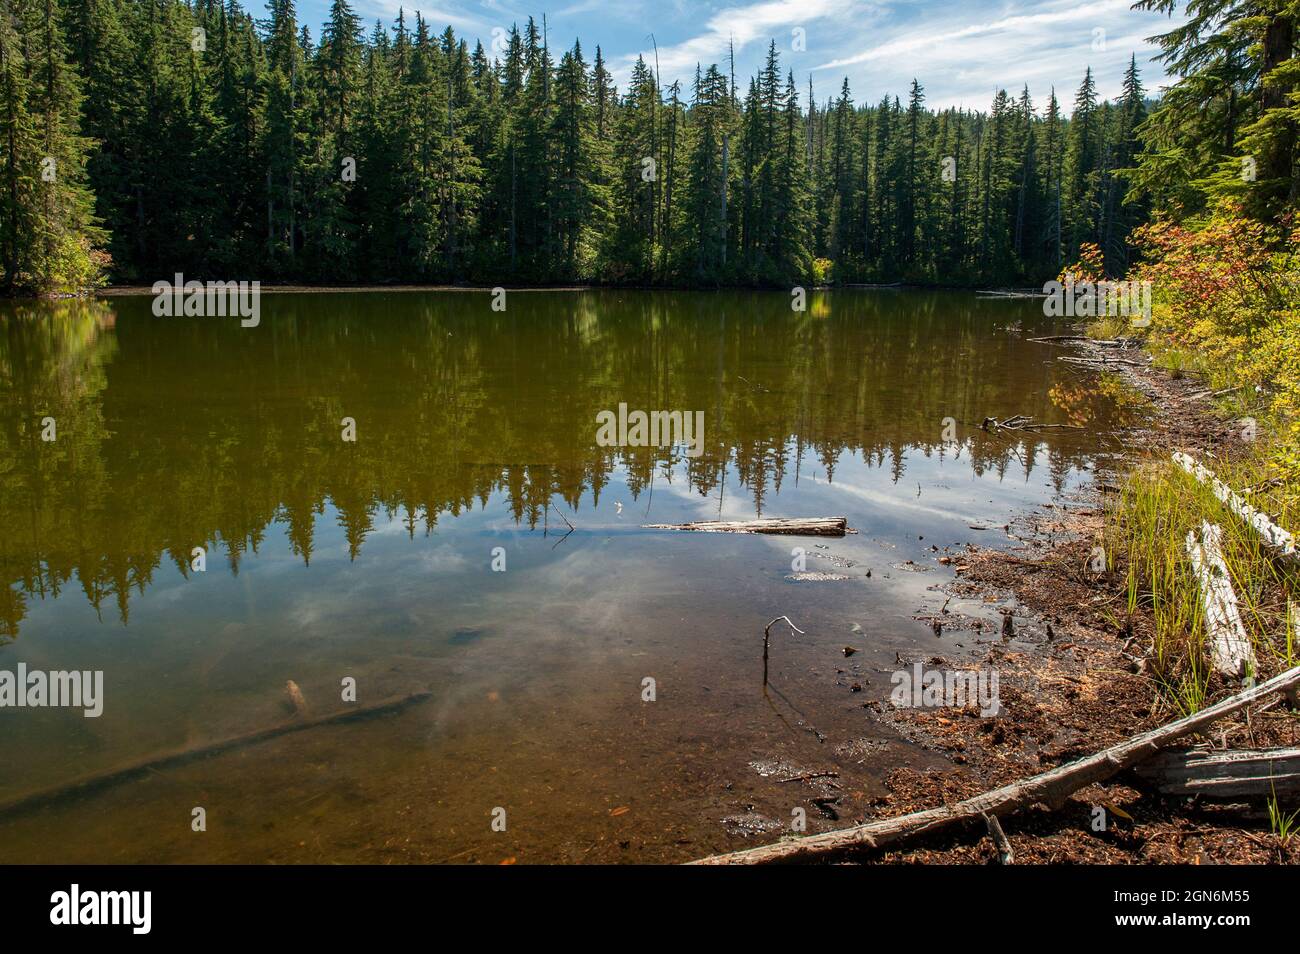 Demasiado Bear Lake es un pequeño lago sucio en el Bosque Nacional Willamette de Oregón cerca de Salt Creek Falls, con costas empinadas y no hay un lugar adecuado para hacerlo Foto de stock